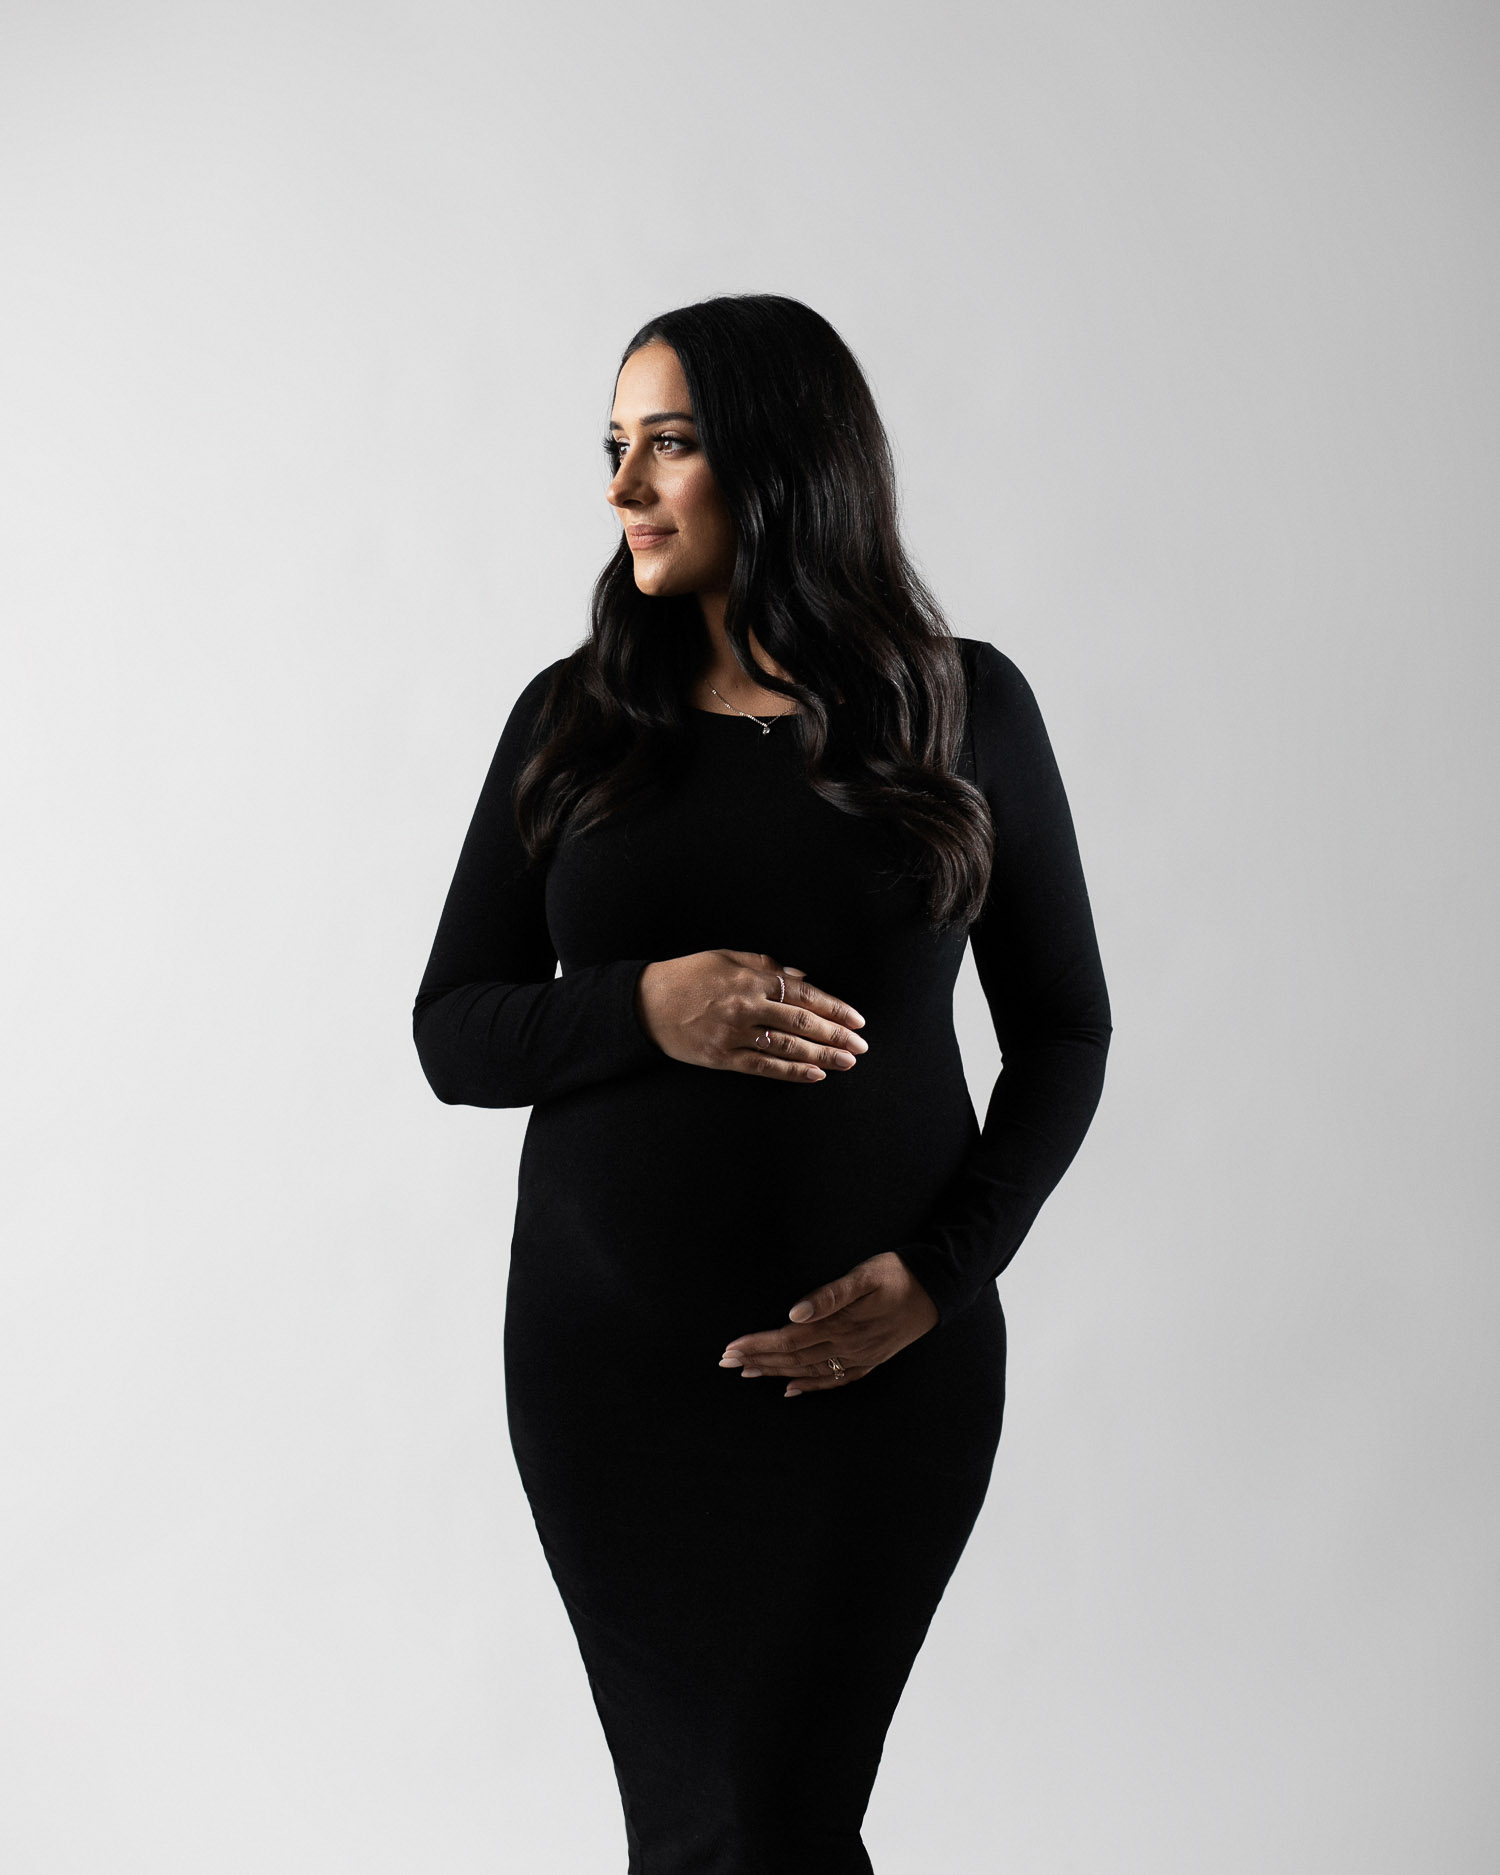 Pregnant woman wearing a black dress.